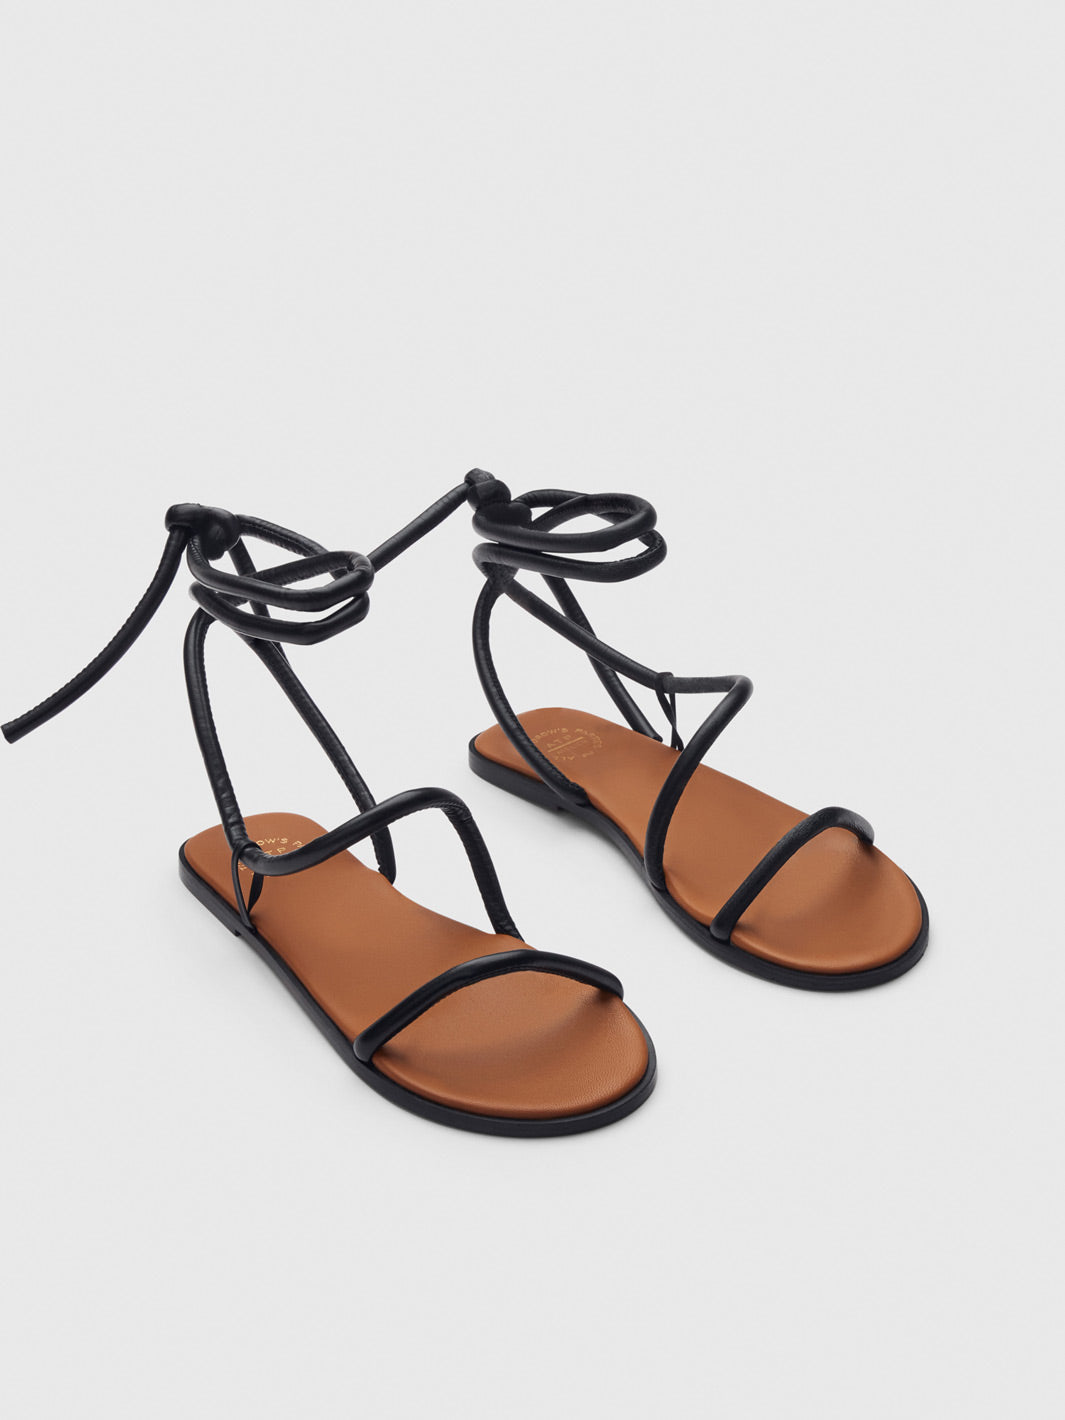 Lentella Black Nappa Strappy sandals